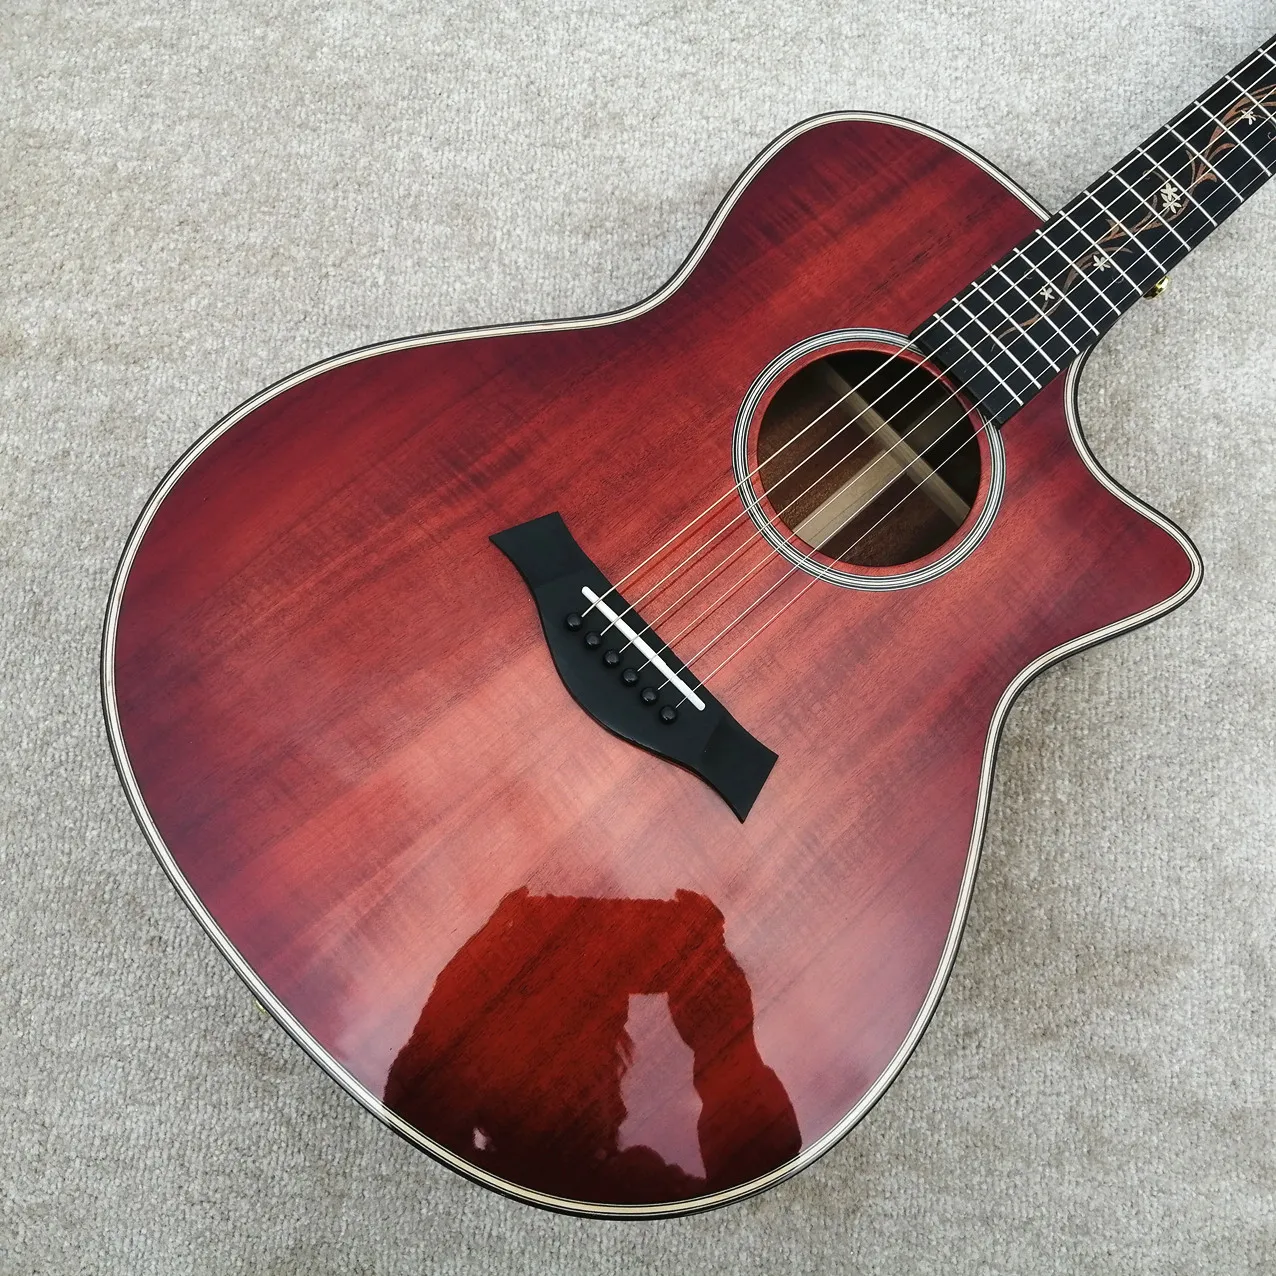 

6 струн Chaylor модель, K24ce Koa дерево 41 дюйм Акустическая гитара, красный вырез электрическая гитара, fishman пикап, бесплатная доставка